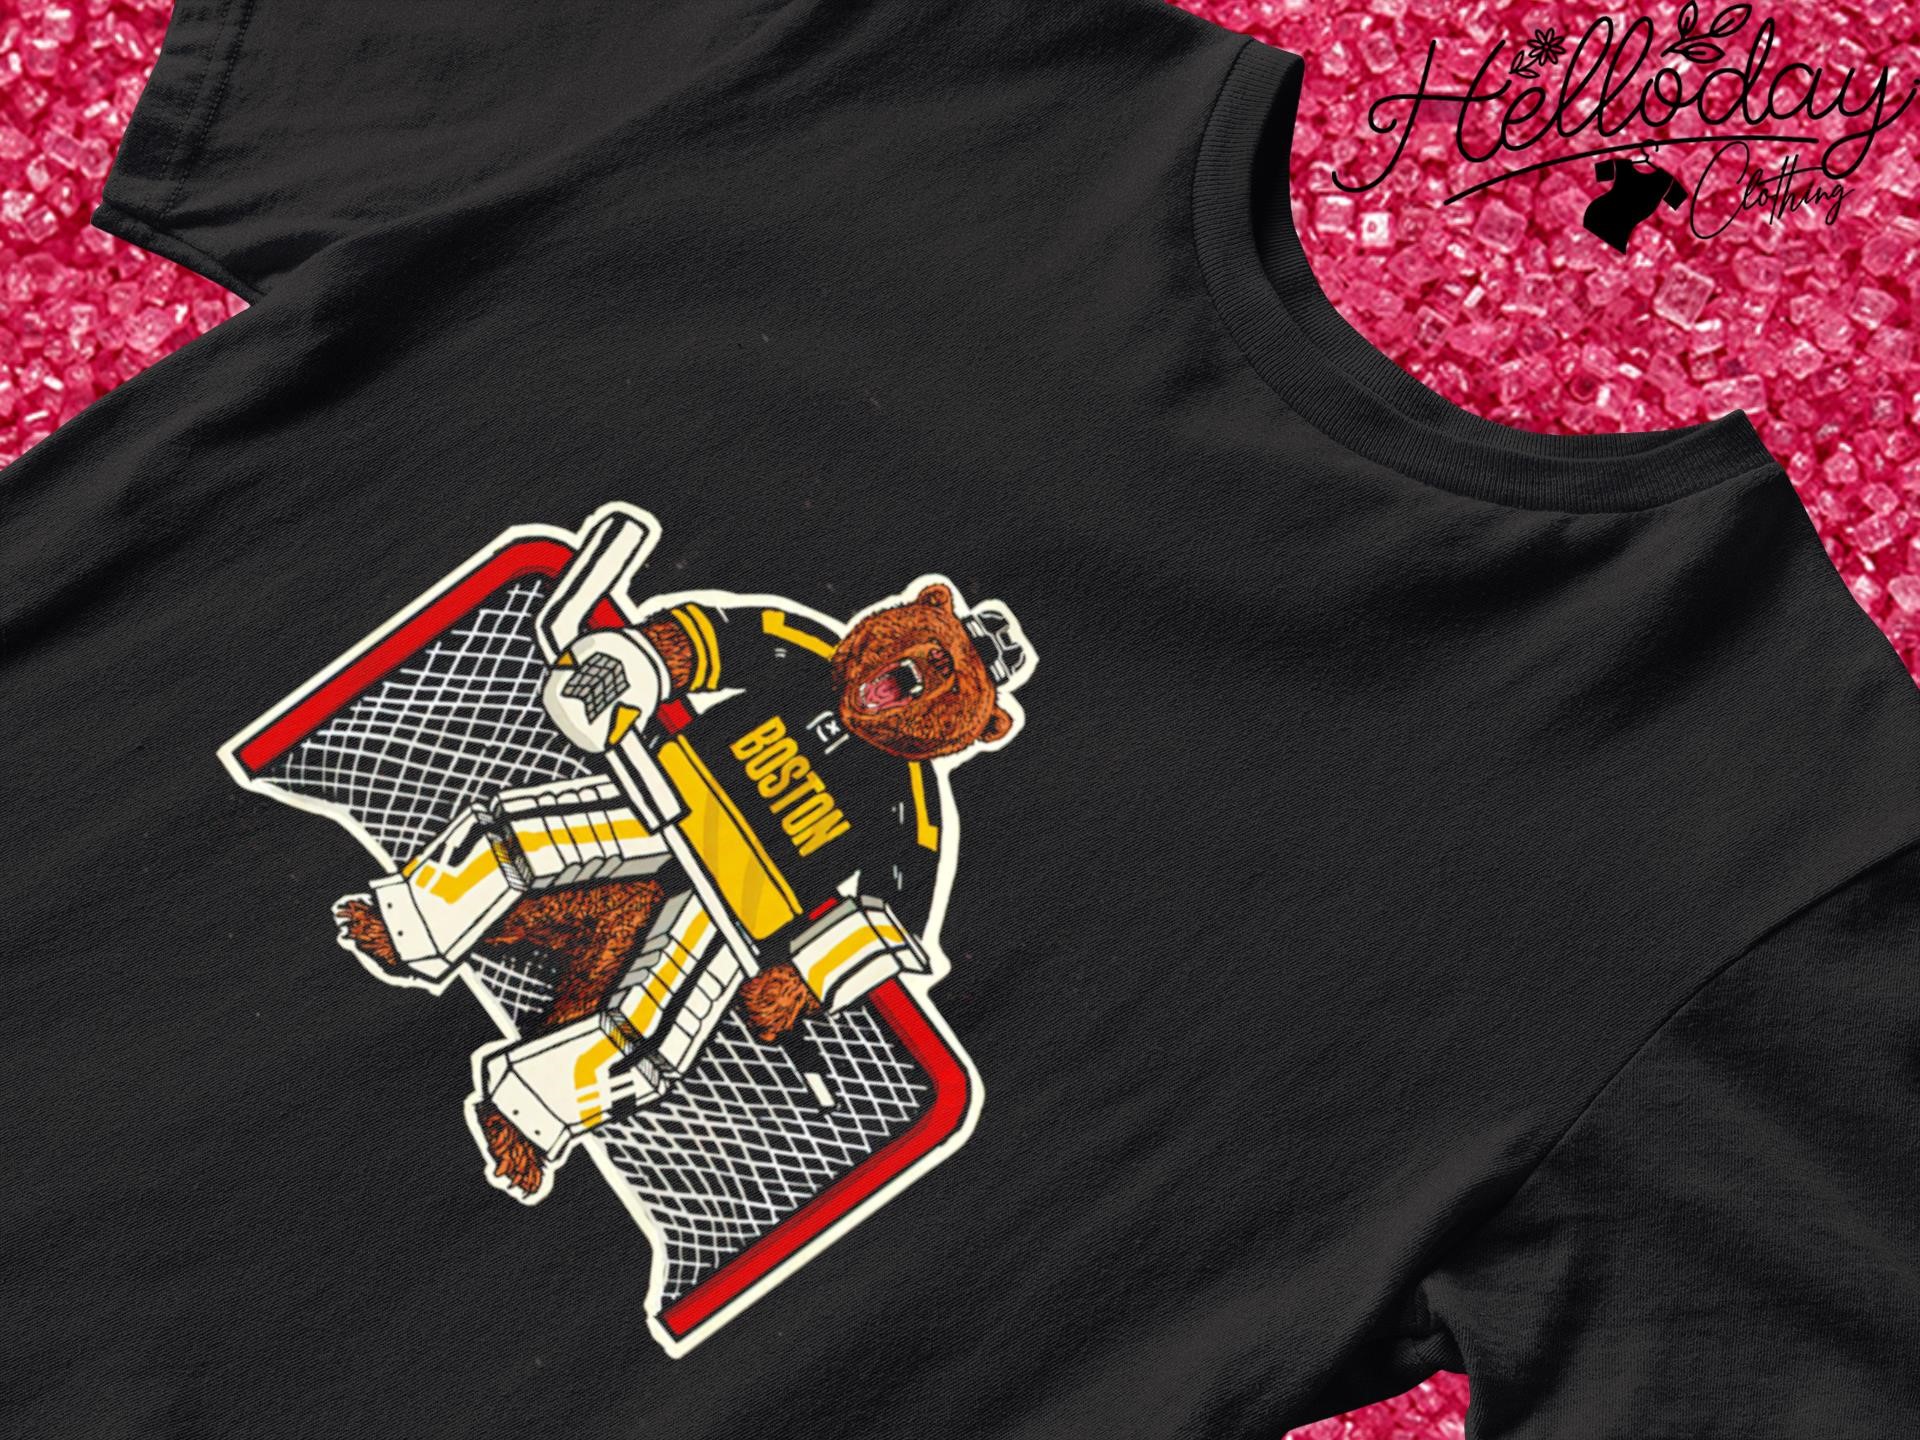 Goalie Bear Boston Bruins shirt